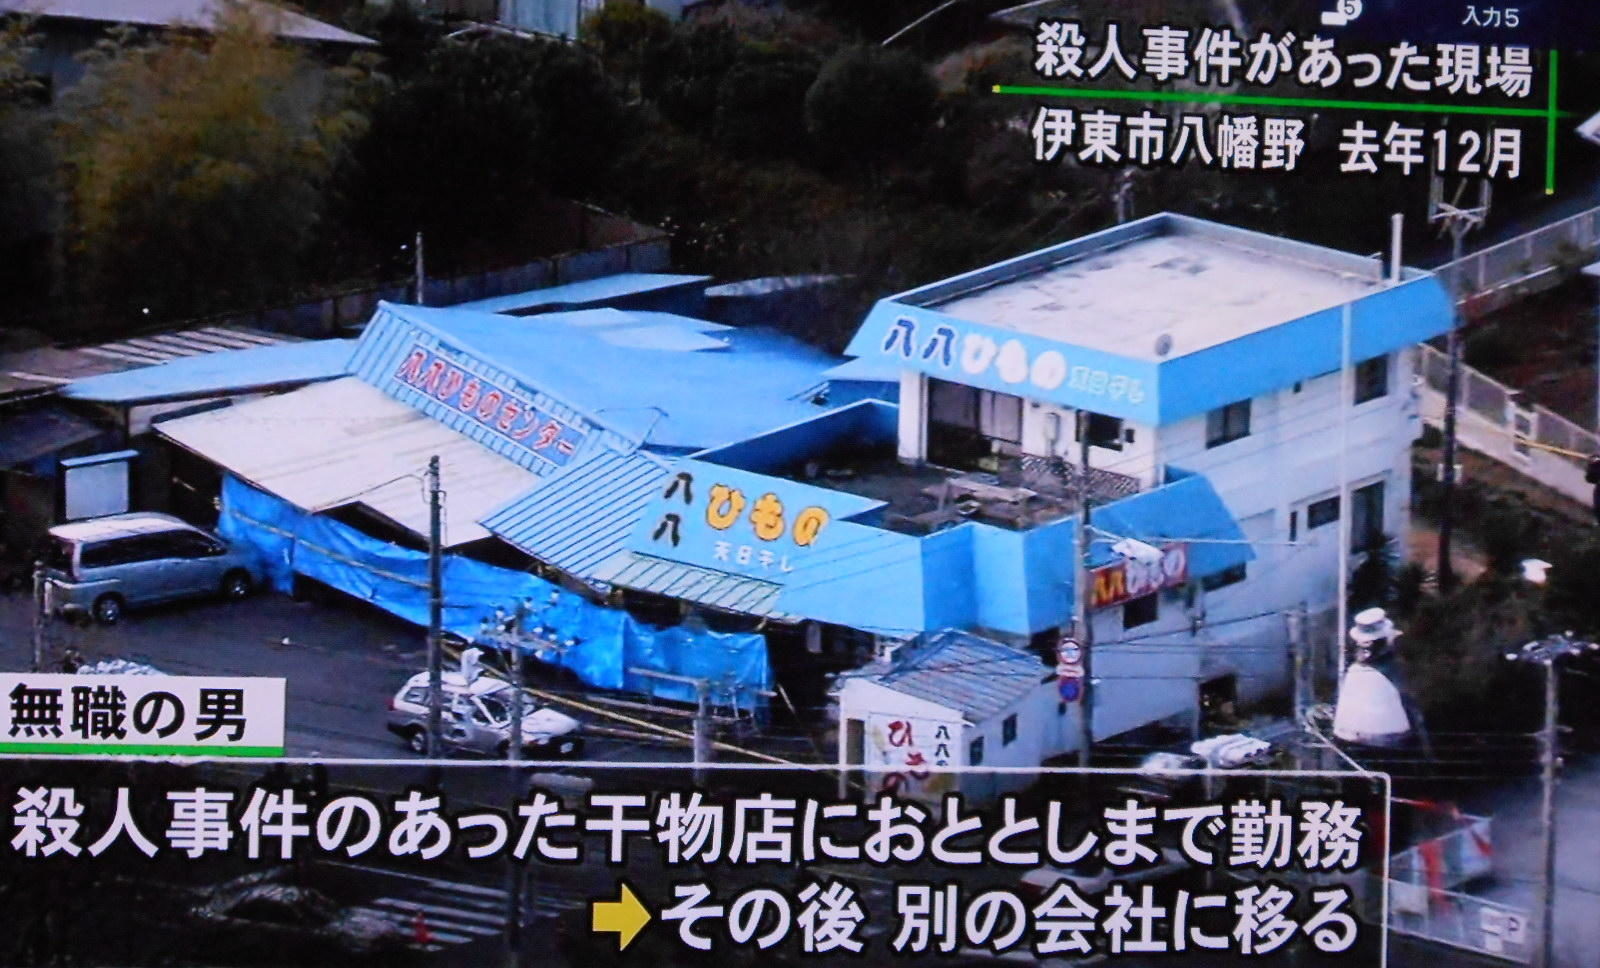 静岡県で起きた干し物店強盗殺人事件